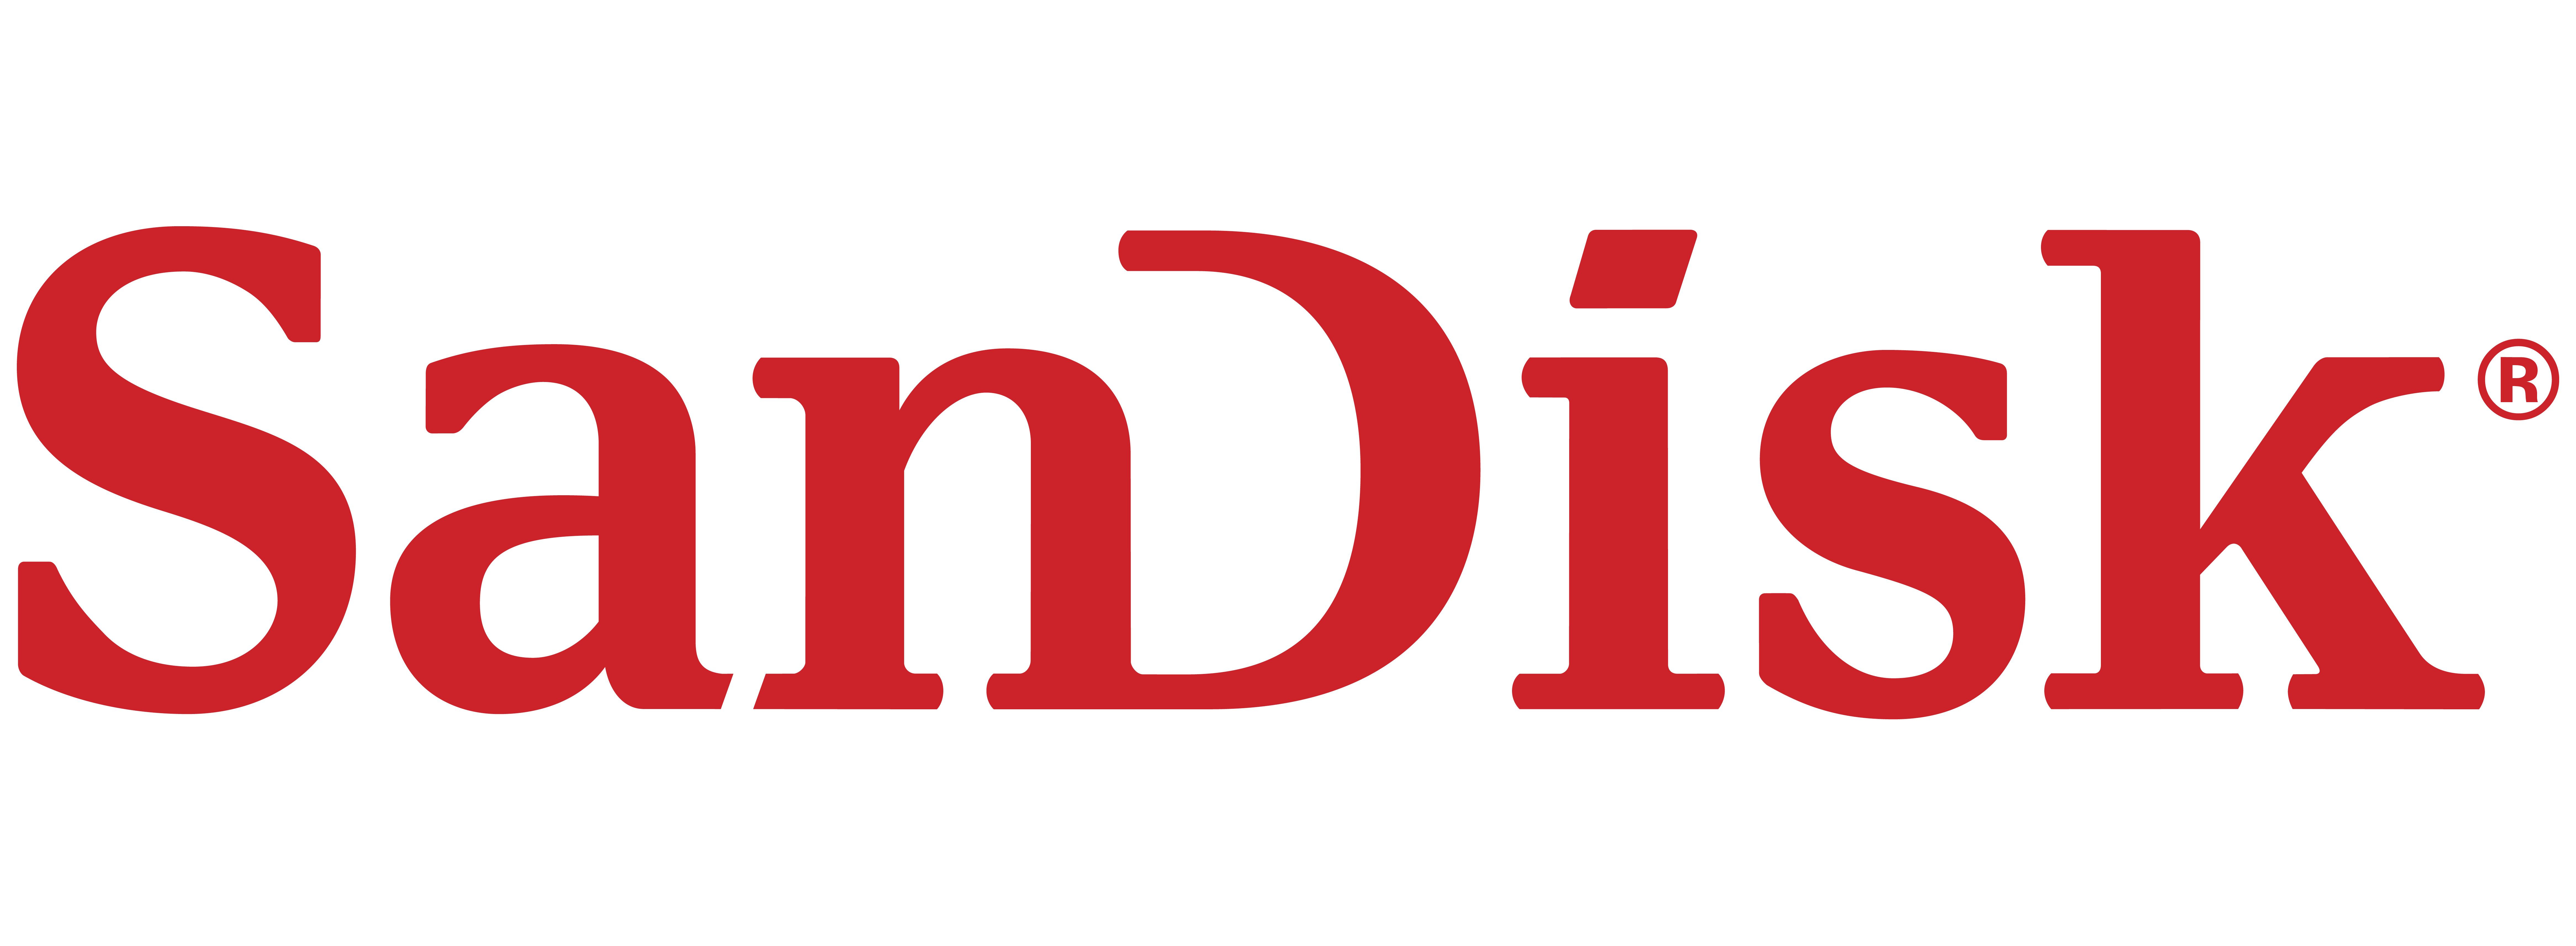 Scandisk Logo - Sandisk Png & Free Sandisk.png Transparent Images #13764 - PNGio